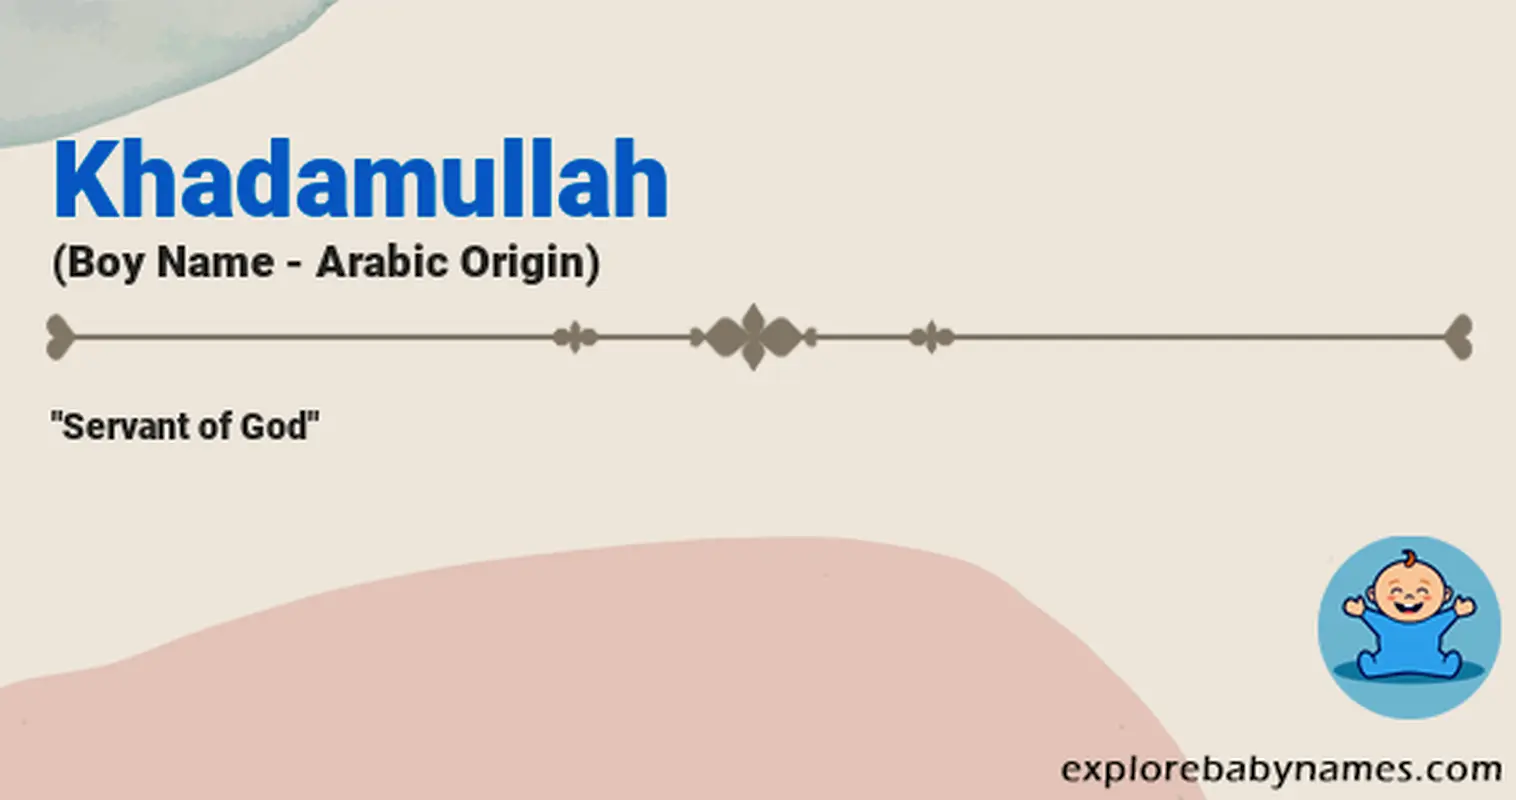 Meaning of Khadamullah